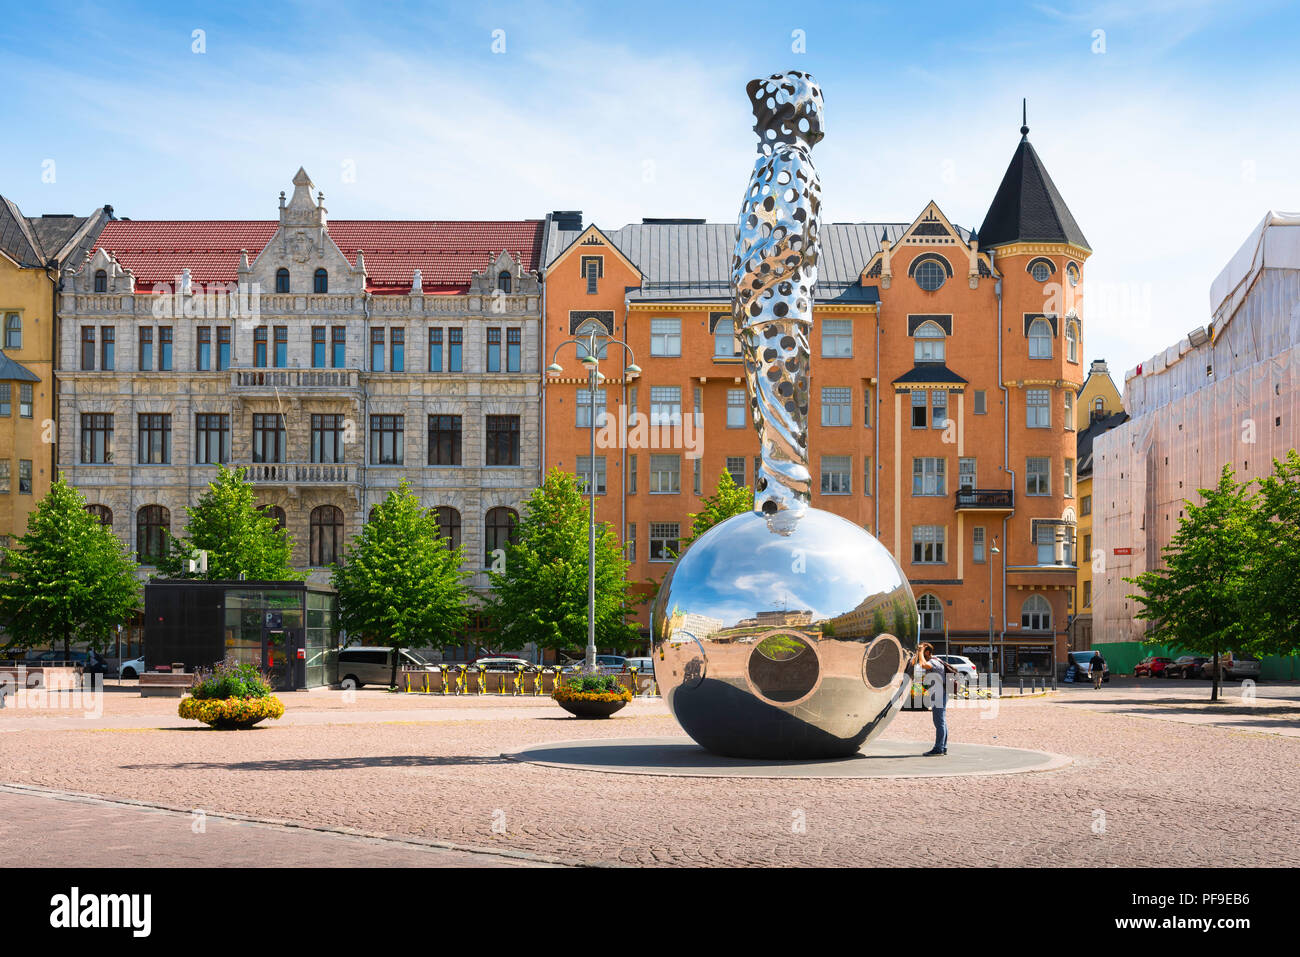 Architettura di Helsinki Finlandia, vista di Art Nouveau edifici in stile e la enorme Lightbringer acciaio monumento situato in piazza Kasarmitori a Helsinki. Foto Stock